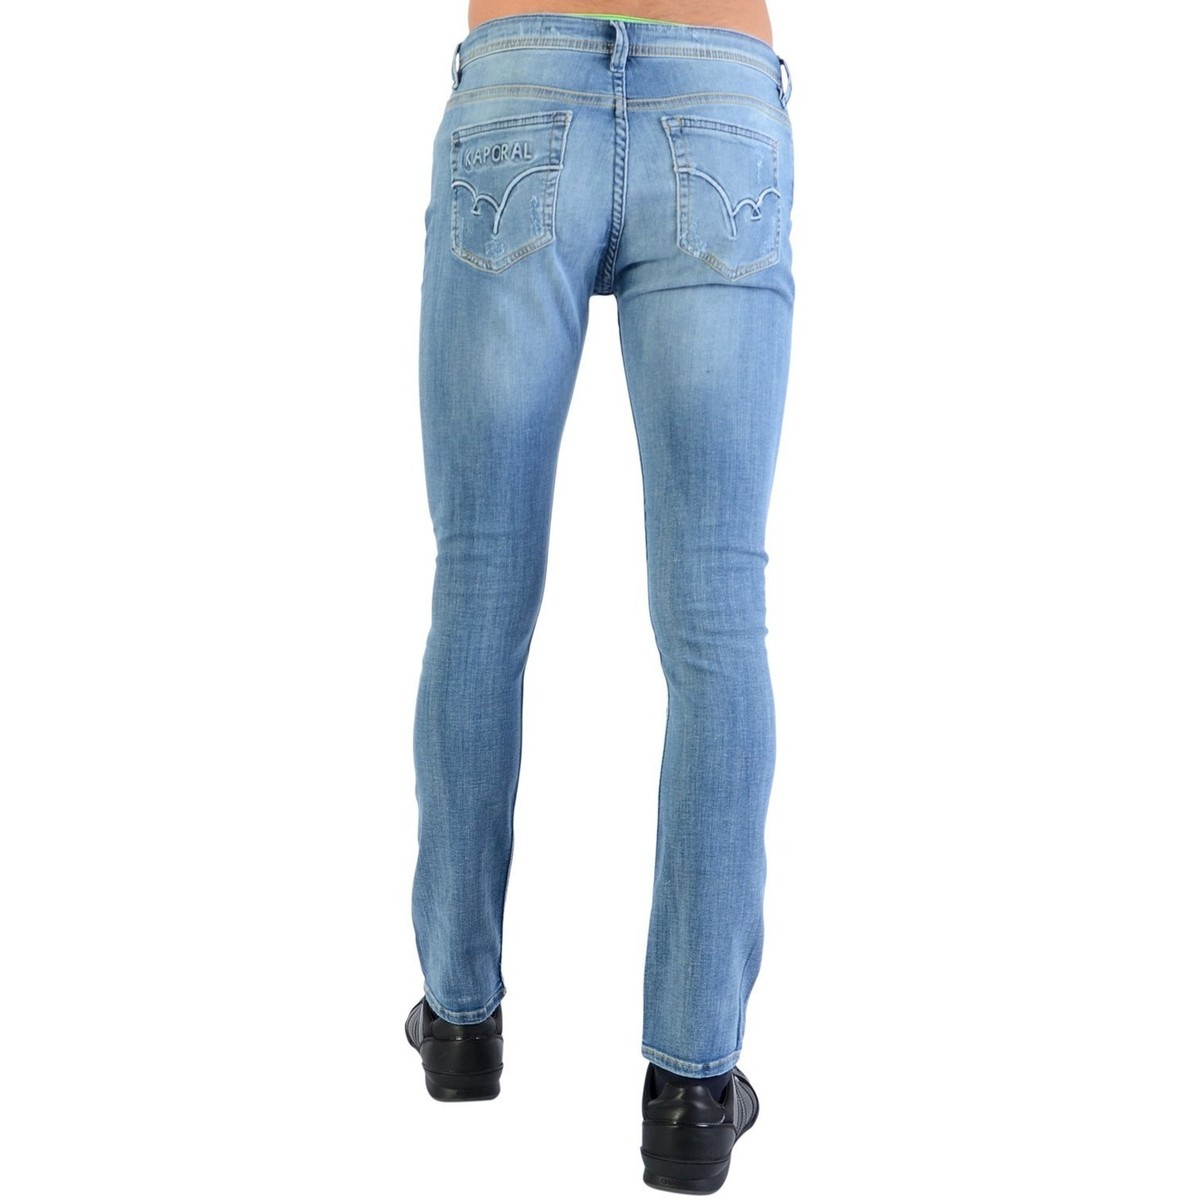 Kaporal Bleu Jeans Xilo 8puLe2T1